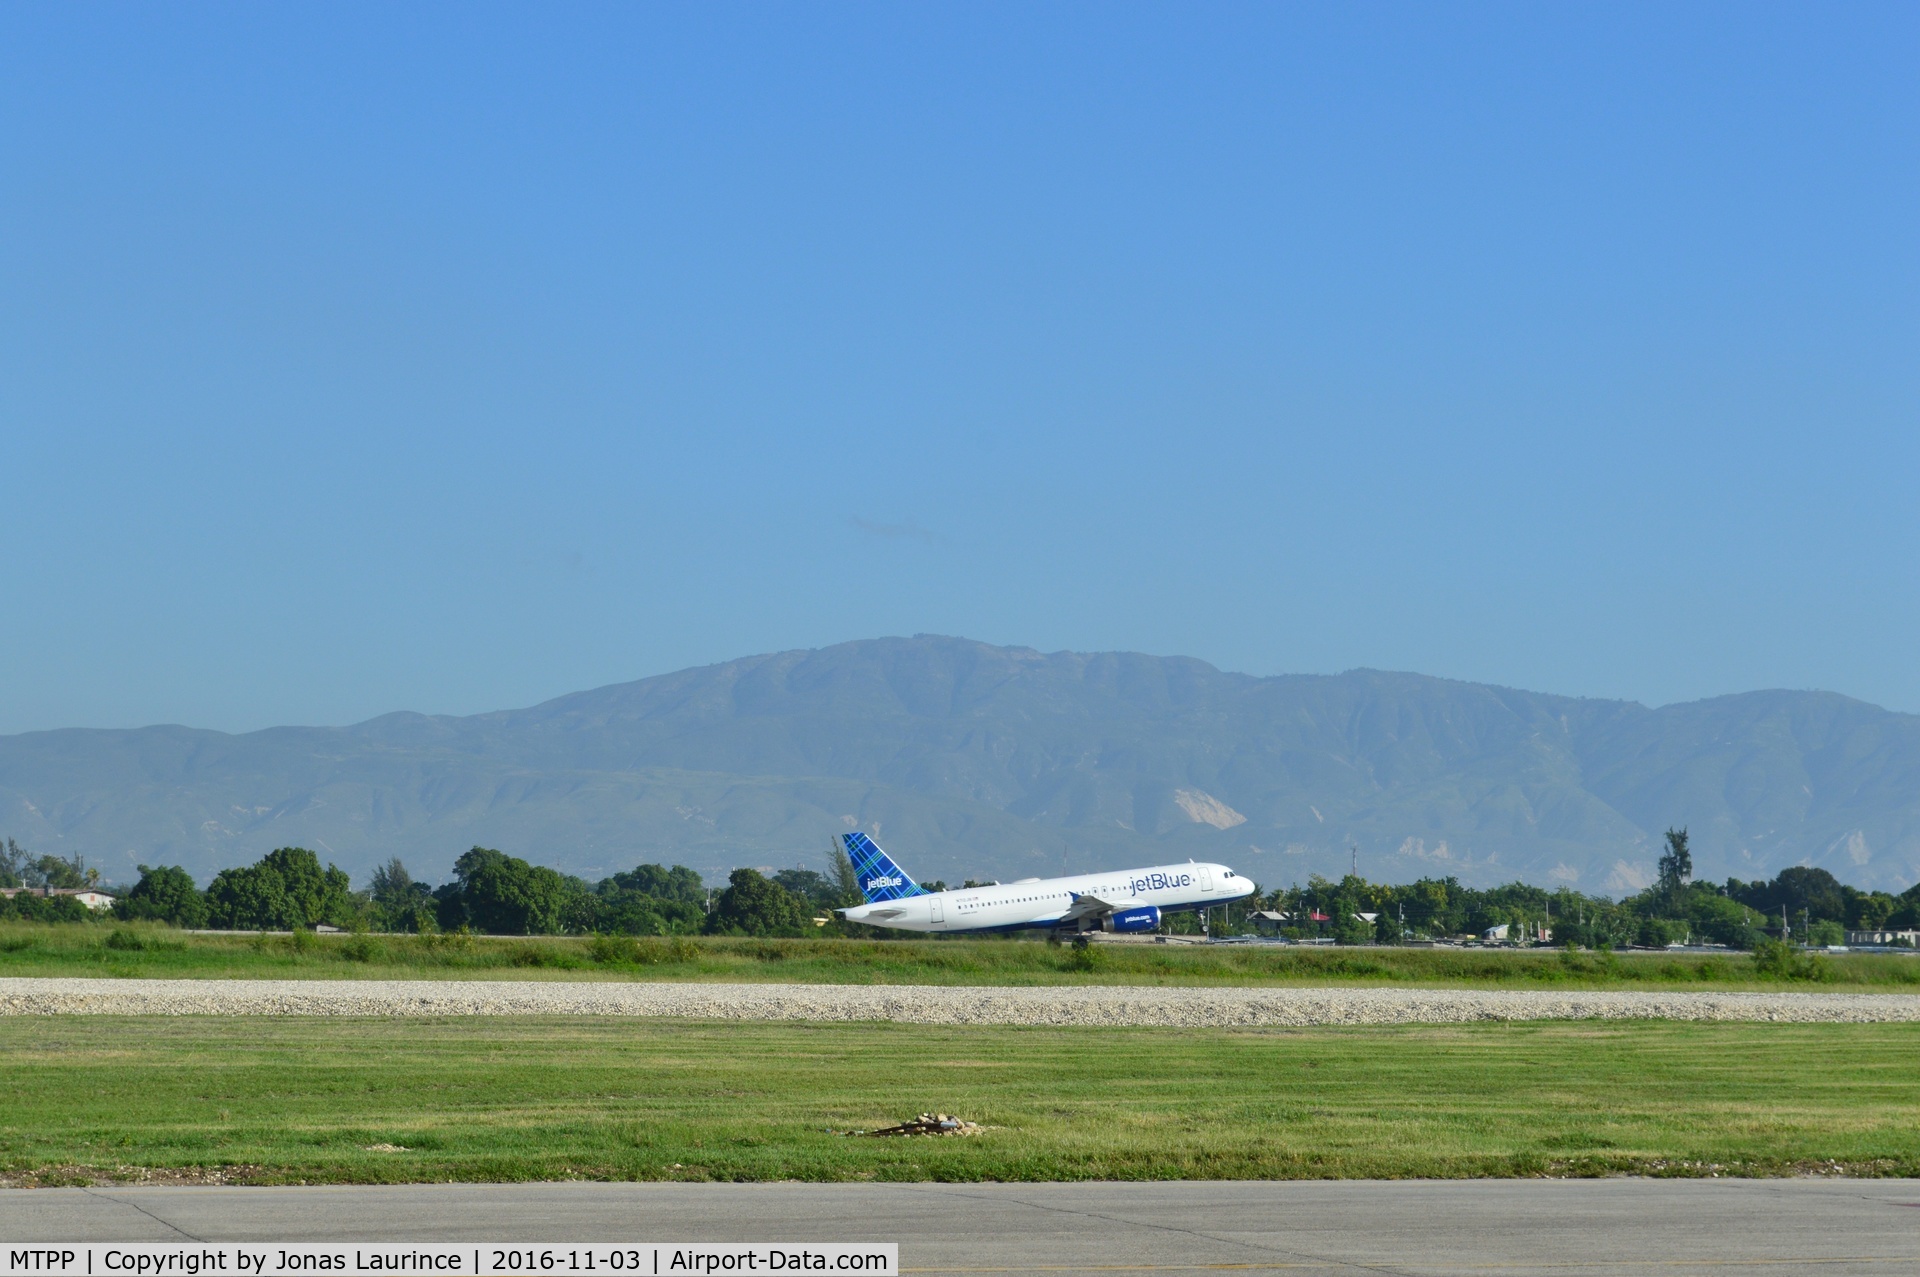 Port-au-Prince International Airport (Toussaint Louverture Int'l), Port-au-Prince Haiti (MTPP) - JetBlue Aircraft take off, destination Fort Lauderdale